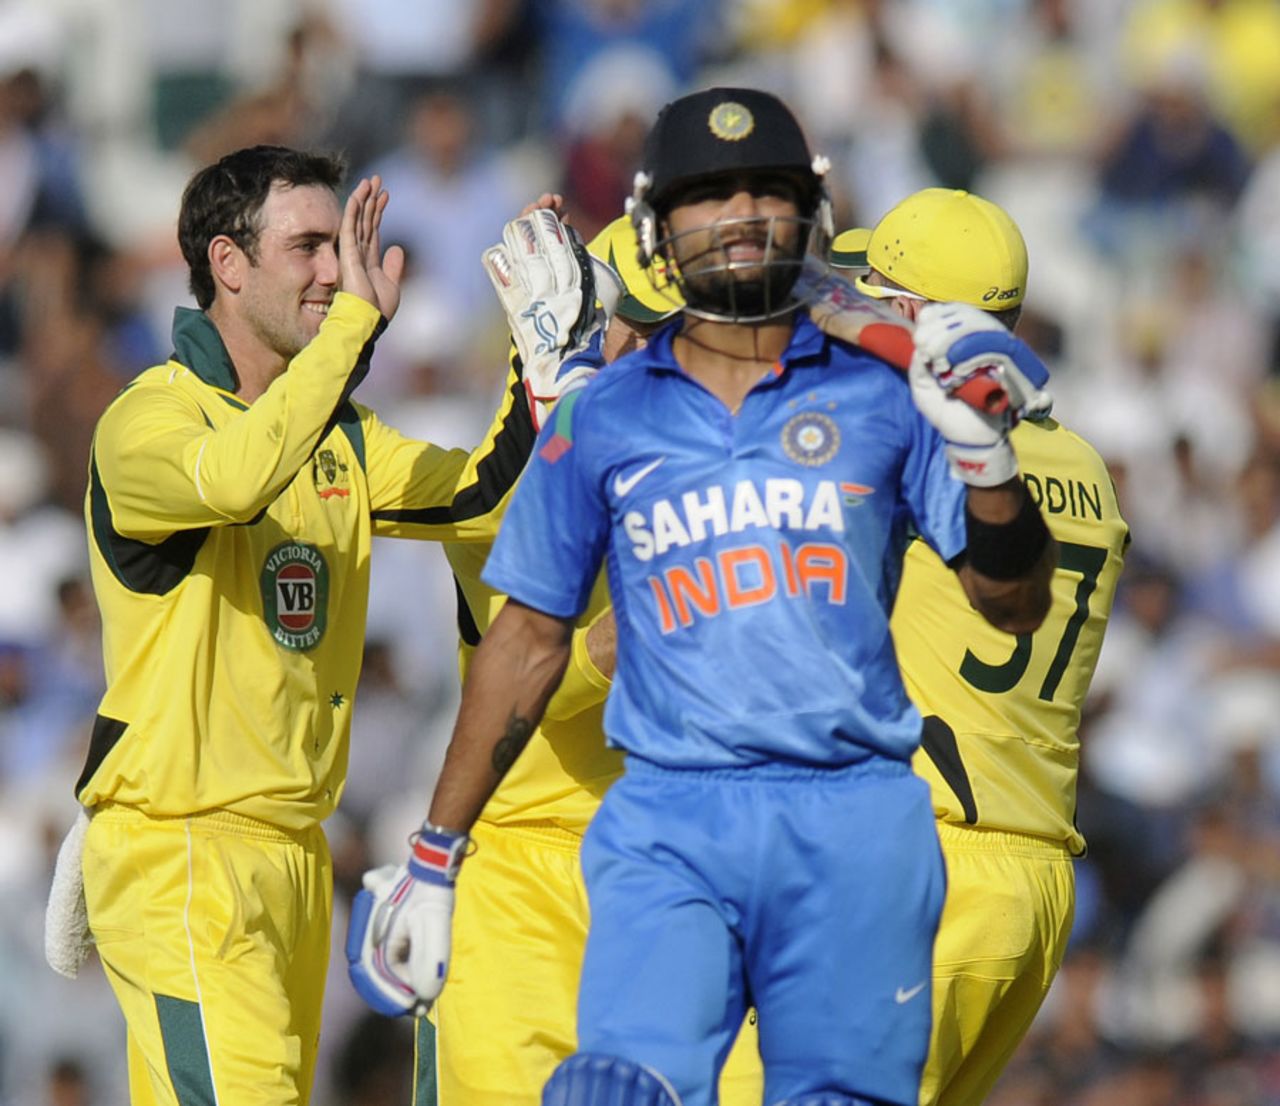 Virat Kohli was dismissed by Glenn Maxwell for 68, India v Australia, 3rd ODI, Mohali, October 19, 2013